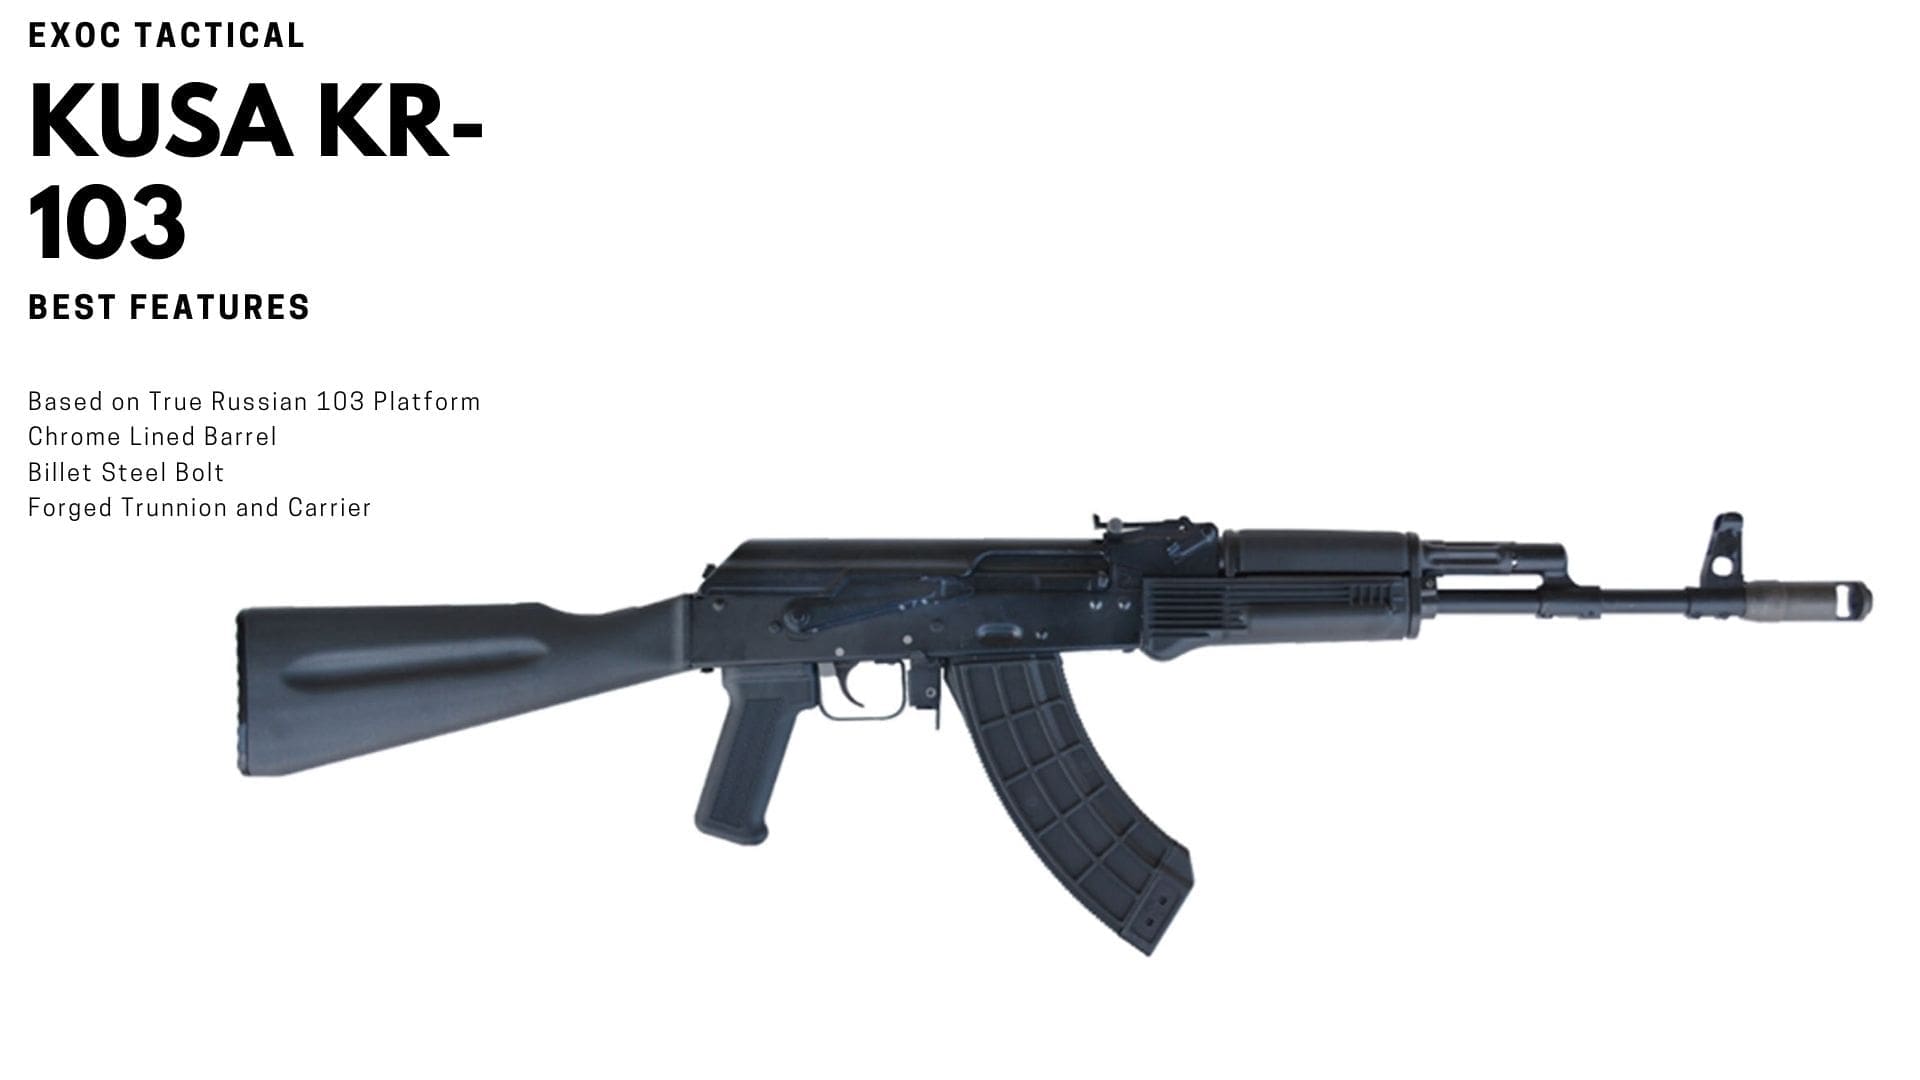 Kalashnikov USA KUSA KR-103 AK-47 Rifle